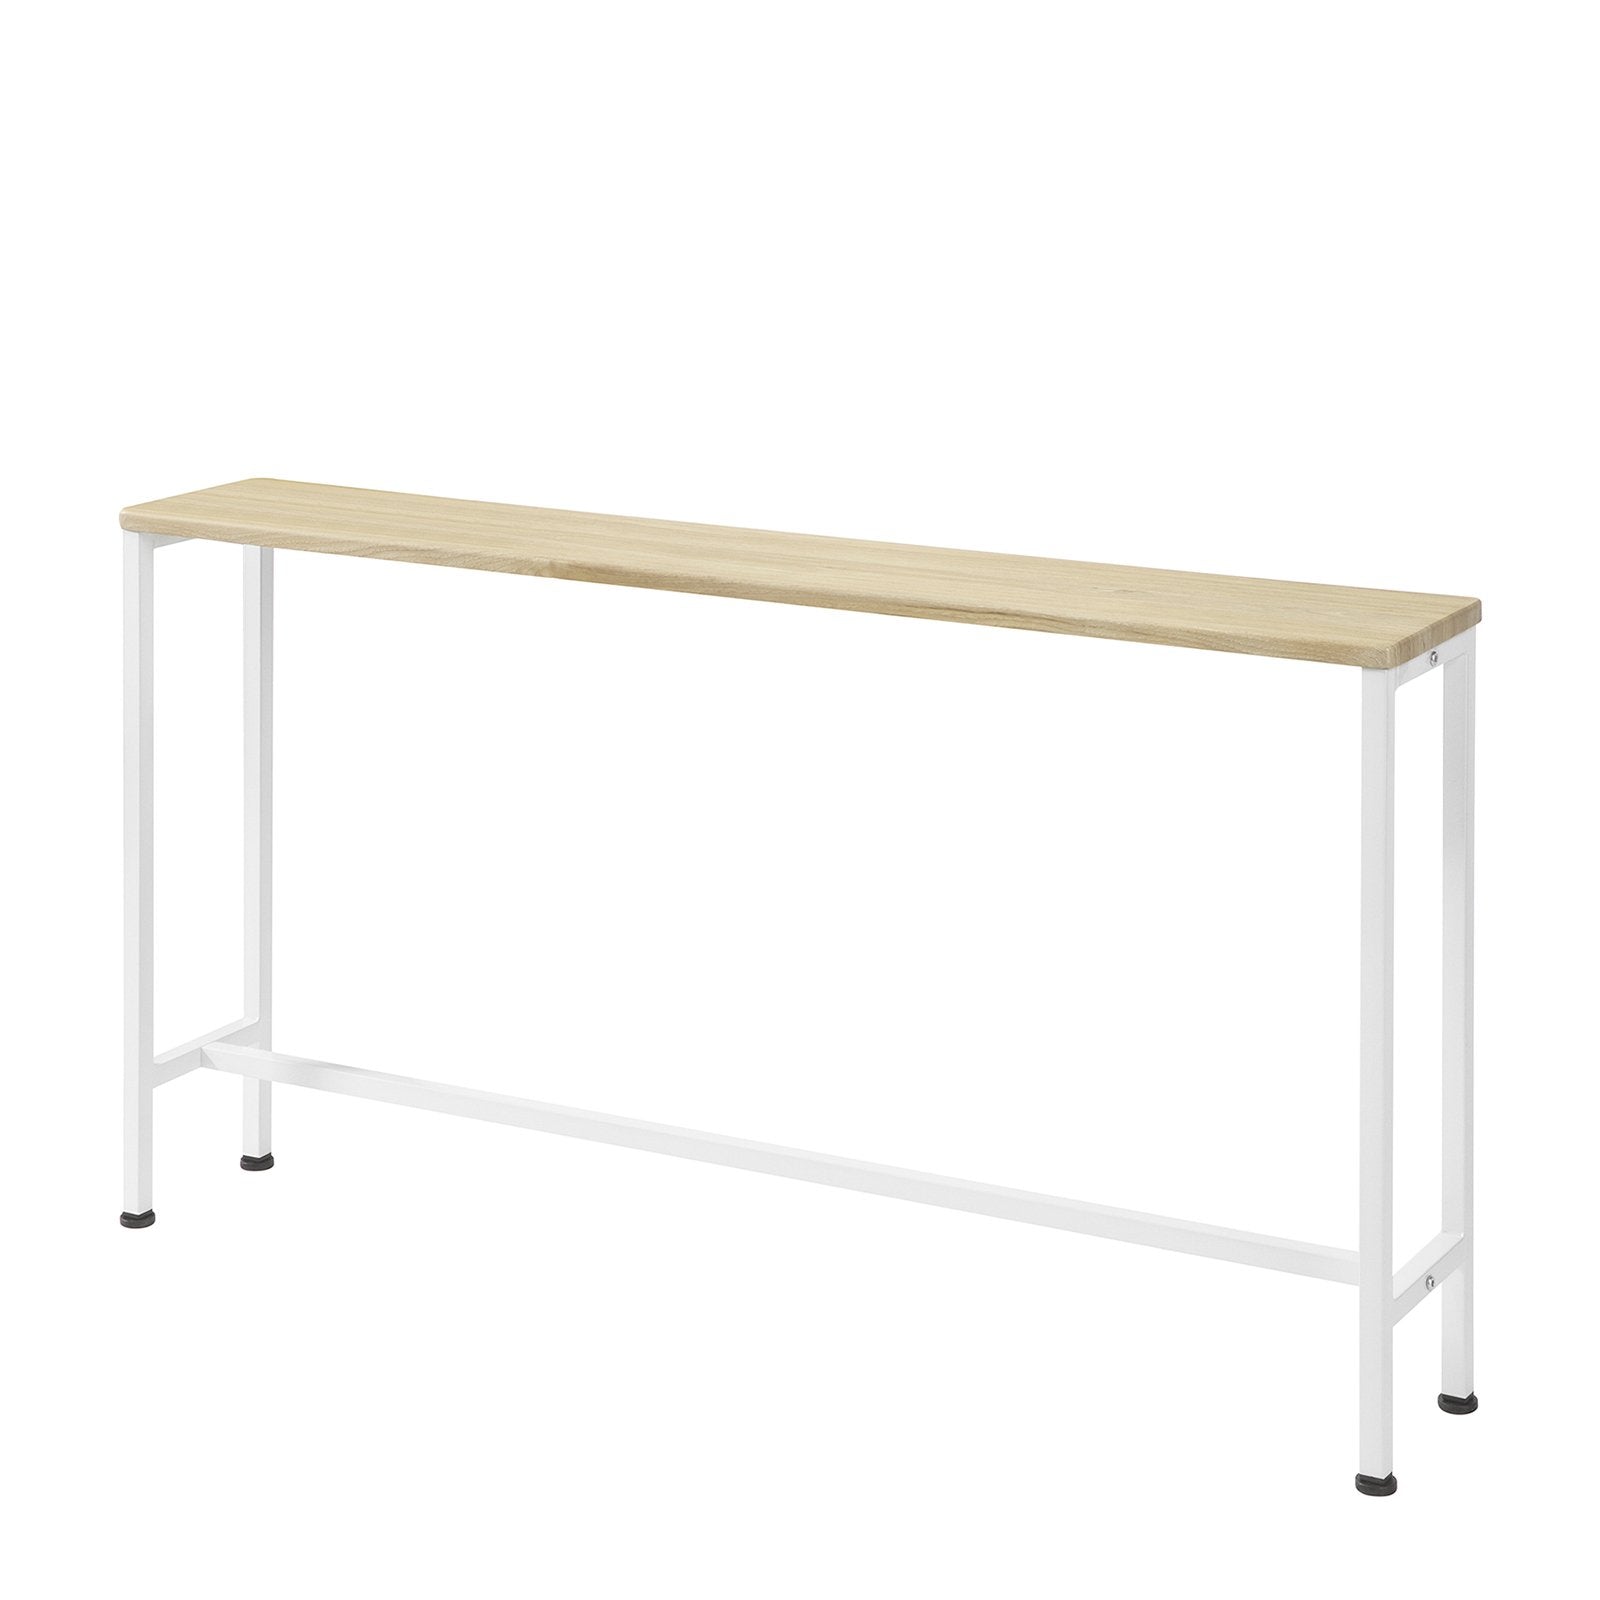 Billede af Smalt konsolbord i skandinavisk stil, 120 x 65 x 20 cm, hvid og naturfarvet